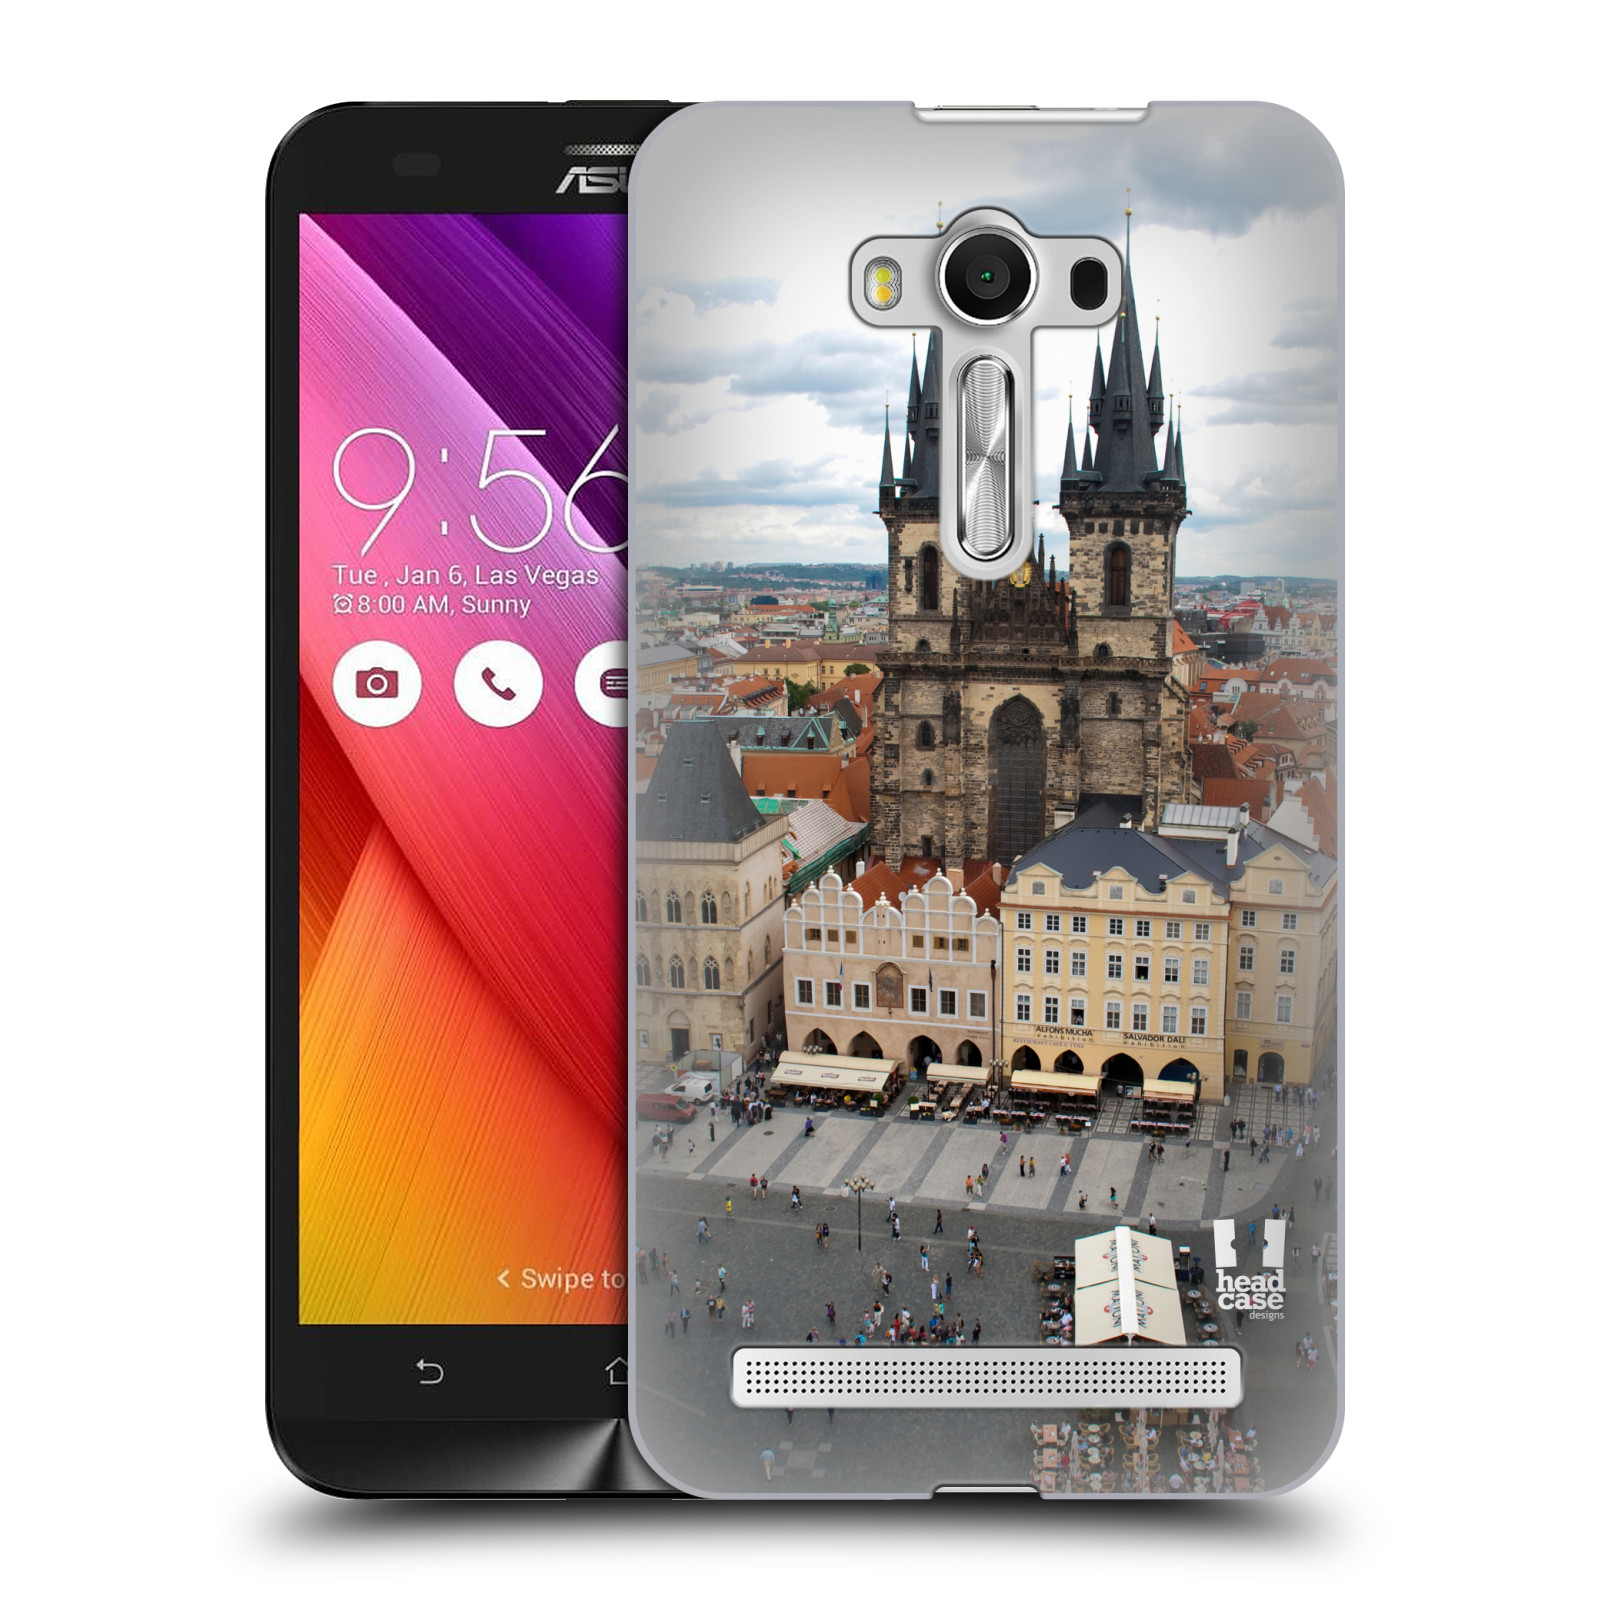 HEAD CASE plastový obal na mobil Asus Zenfone 2 LASER (5,5 displej ZE550KL) vzor Města foto náměstí ČESKÁ REPUBLIKA, PRAHA, STAROMĚSTSKÉ NÁMĚSTÍ